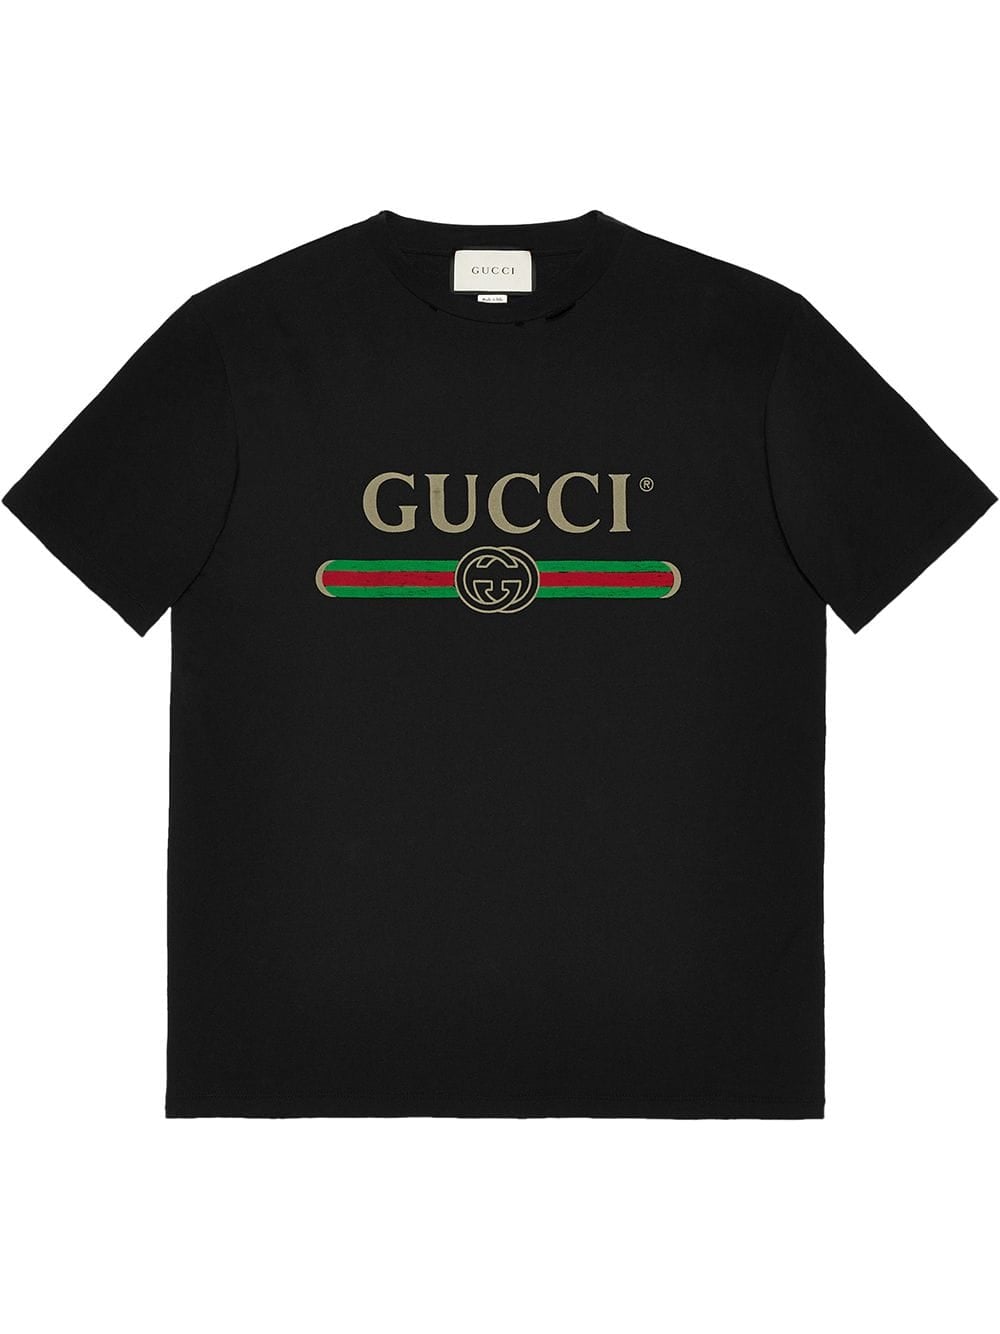 How To Spot A Fake Gucci Shirt | estudioespositoymiguel.com.ar